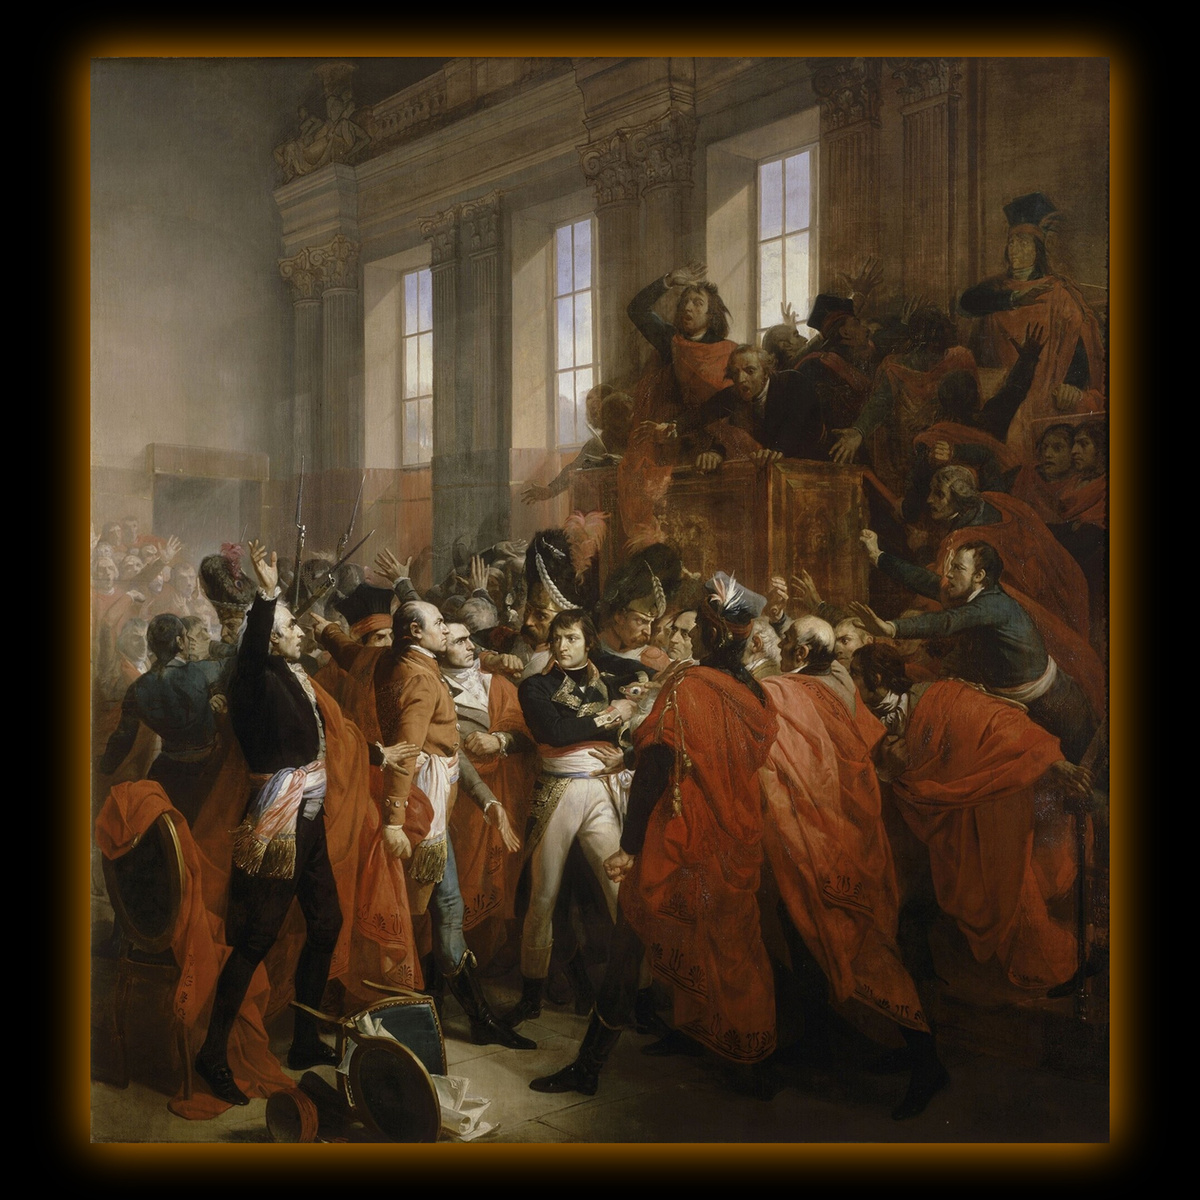 Бонапарт с солдатами разгоняет Совет пятисот. Это произошло после того, как якобинские депутаты осмелились напасть на генерала Наполеона с оружием в 1799 году в здании нижней палаты французского парламента. Картина французского художника Франсуа Бушо, написанная в 1840 году.